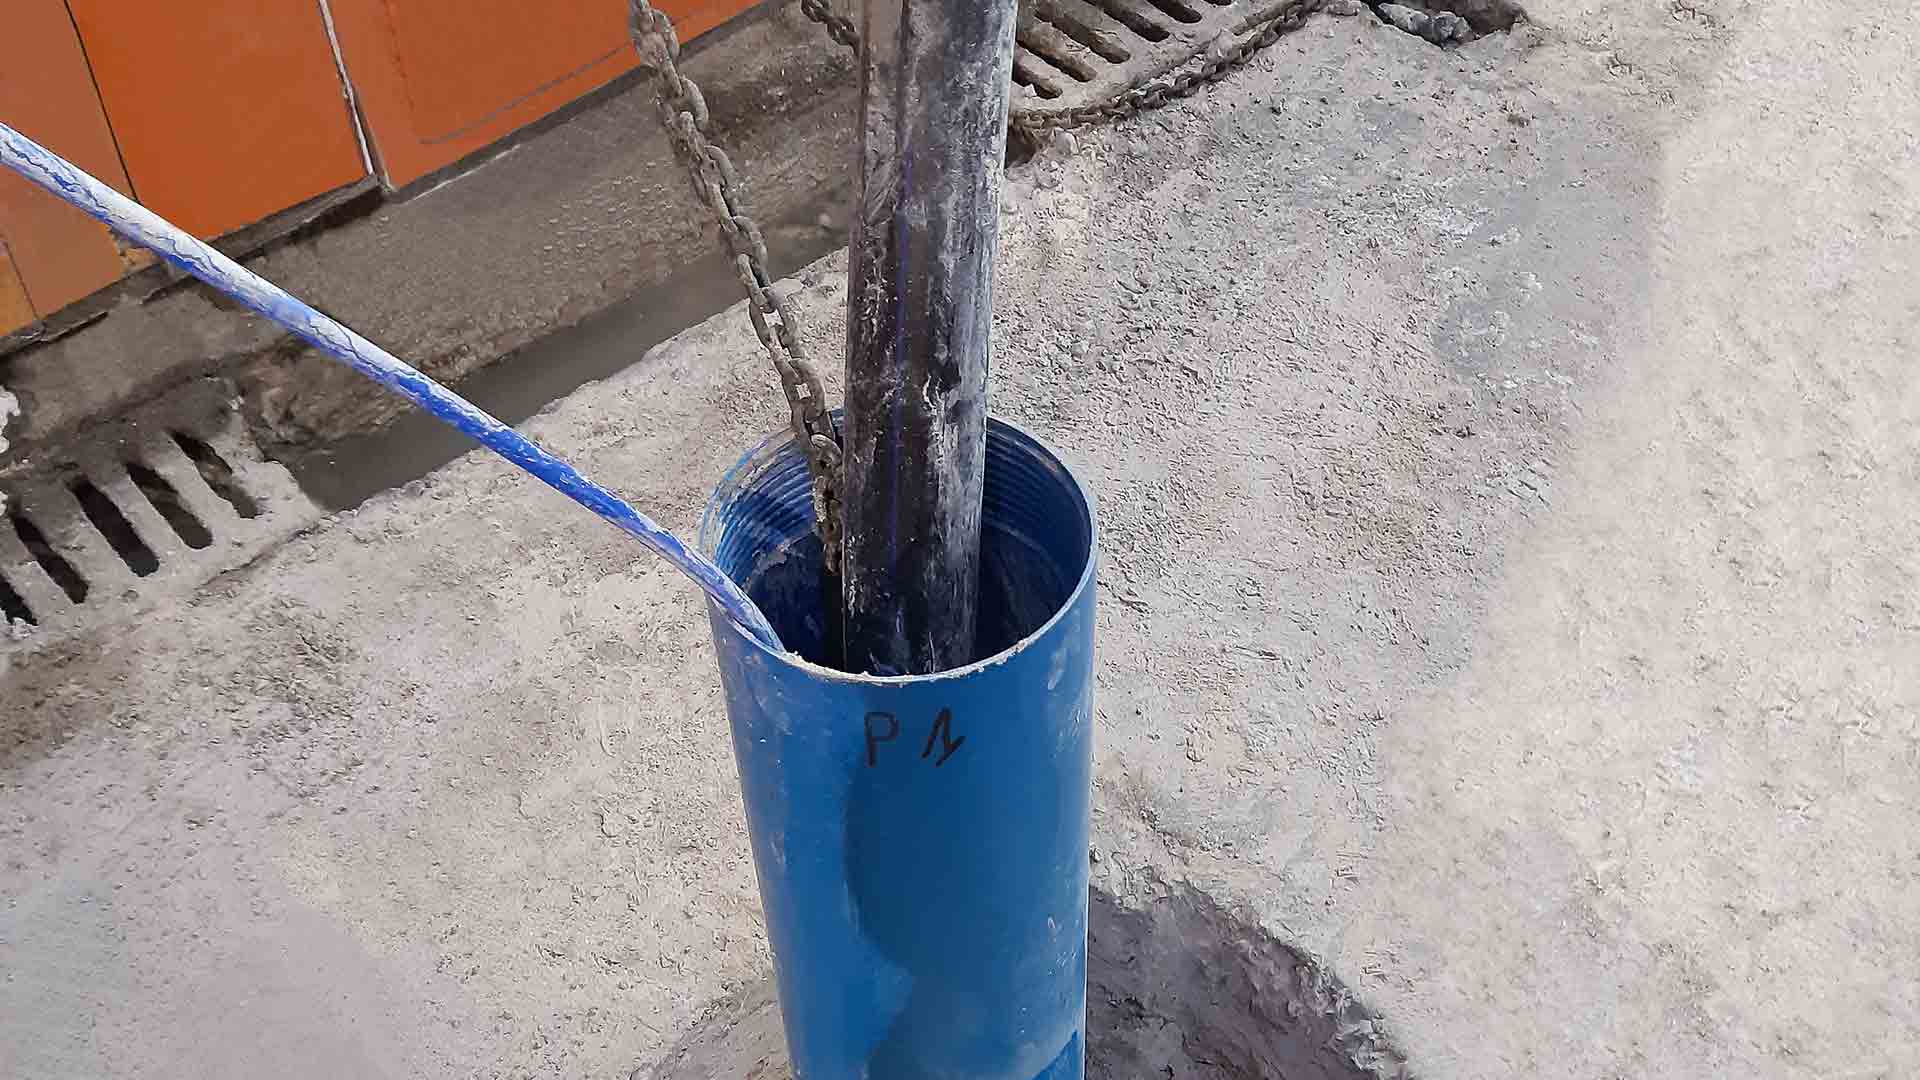 Pompe de forage installée dans un puits de faible diamètre